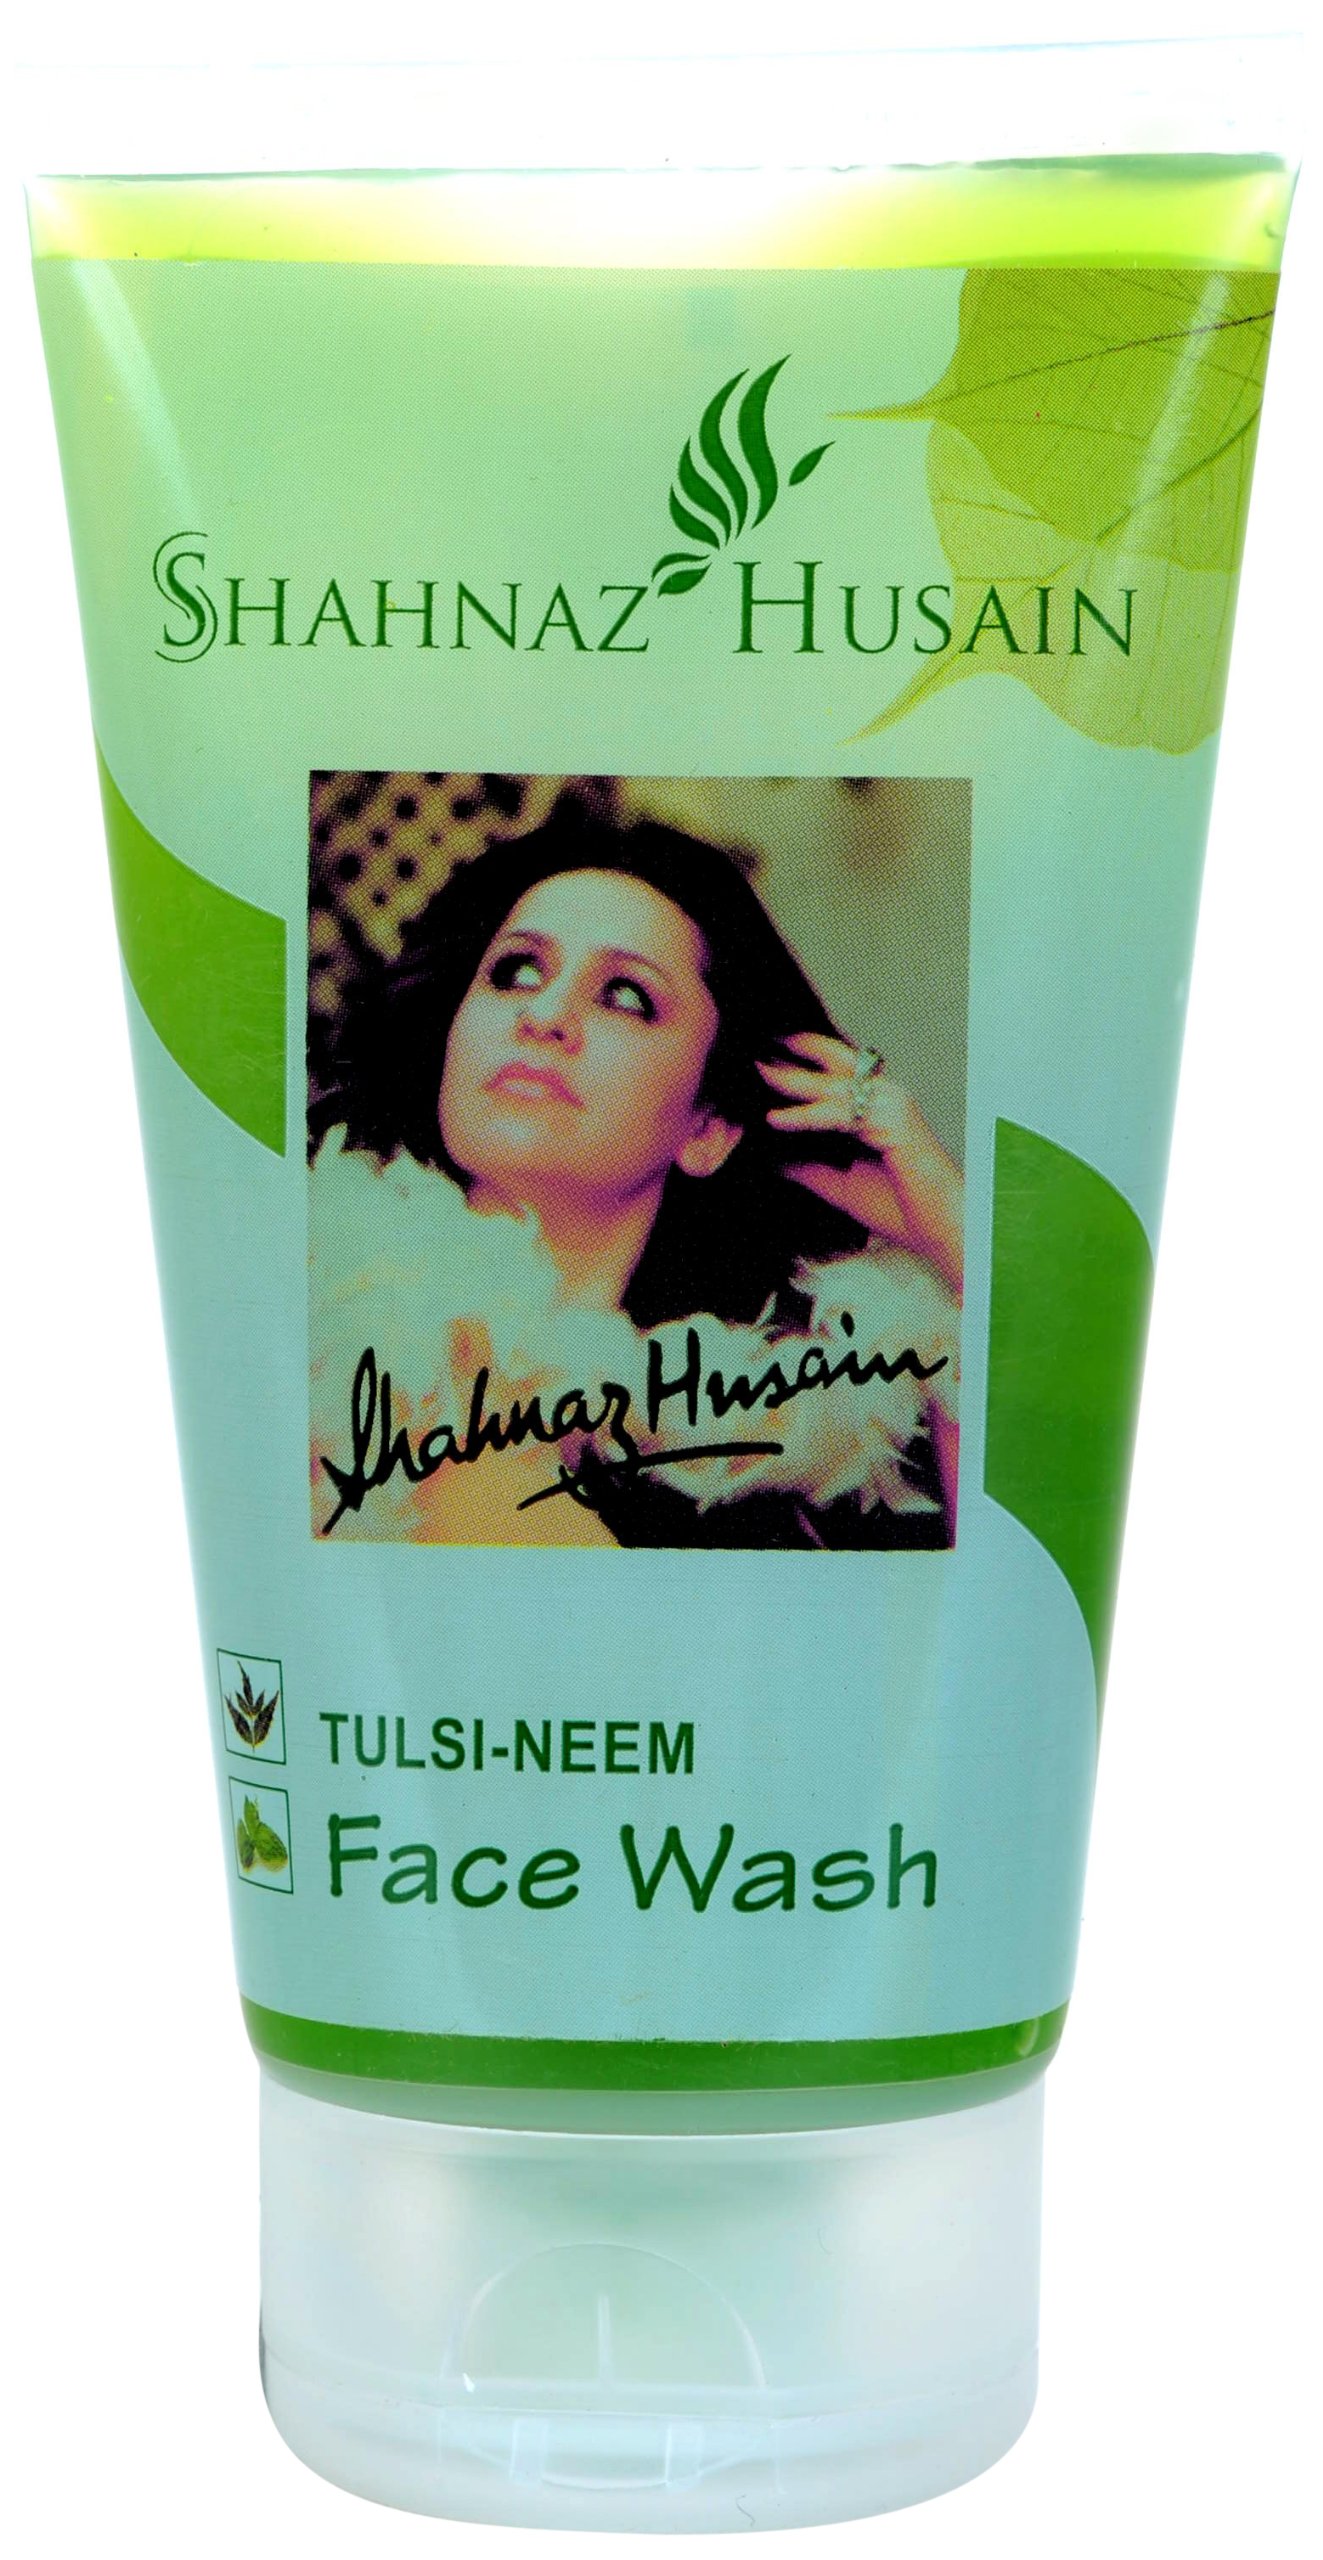 TULSI-NEEM Face Wash, Shahnaz Husain (ТУЛСИ-НИМ средство для умывания, Шахназ Хусейн), 50 г.